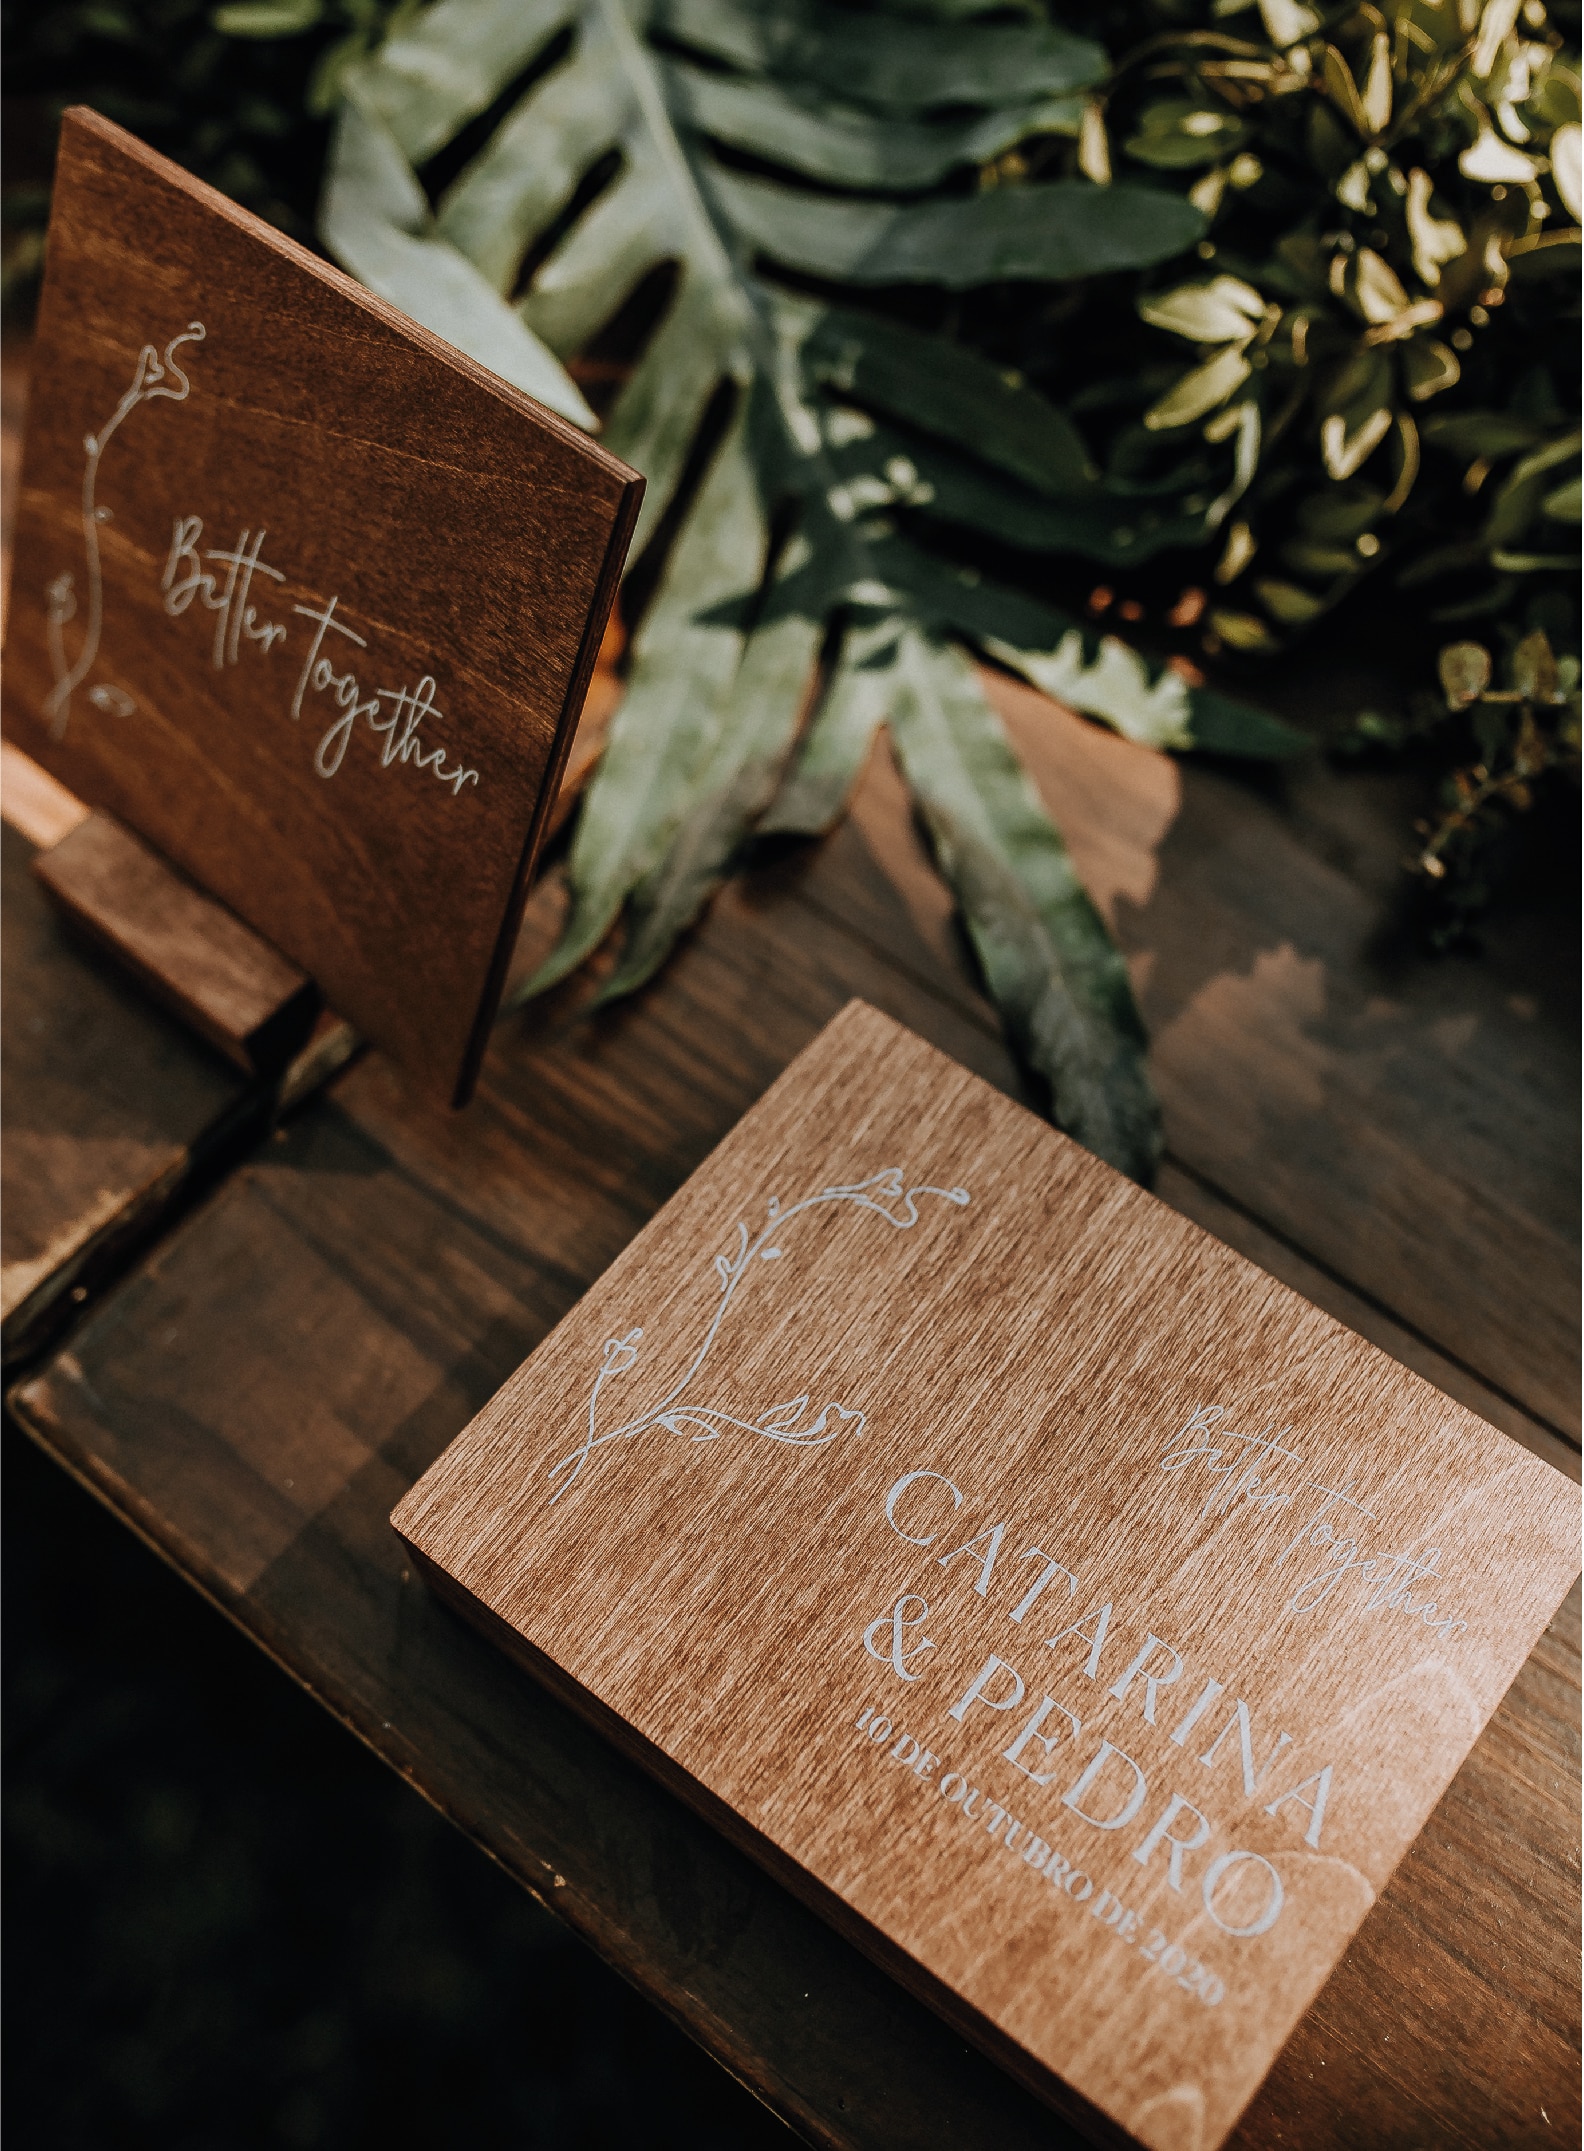 Caixa das alianças da atriz Catarina Gouveia do estilo floral feita de madeira com tipografia branca numa mesa de madeira